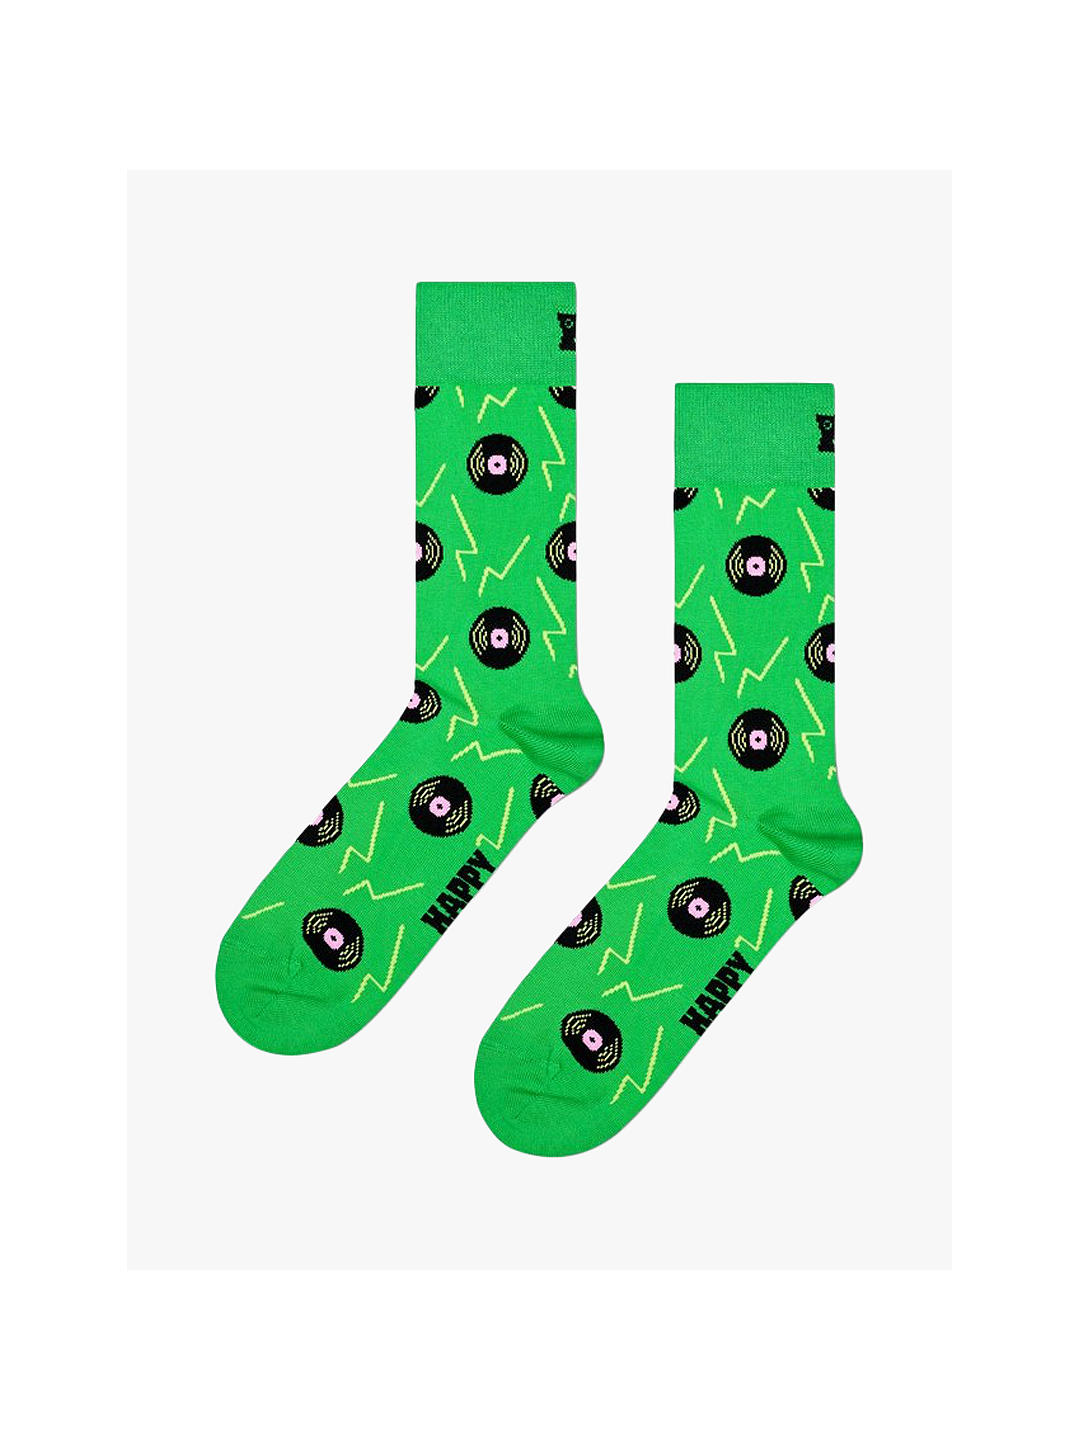 Happy Socks Vinyl Print Socks, Green/Multi